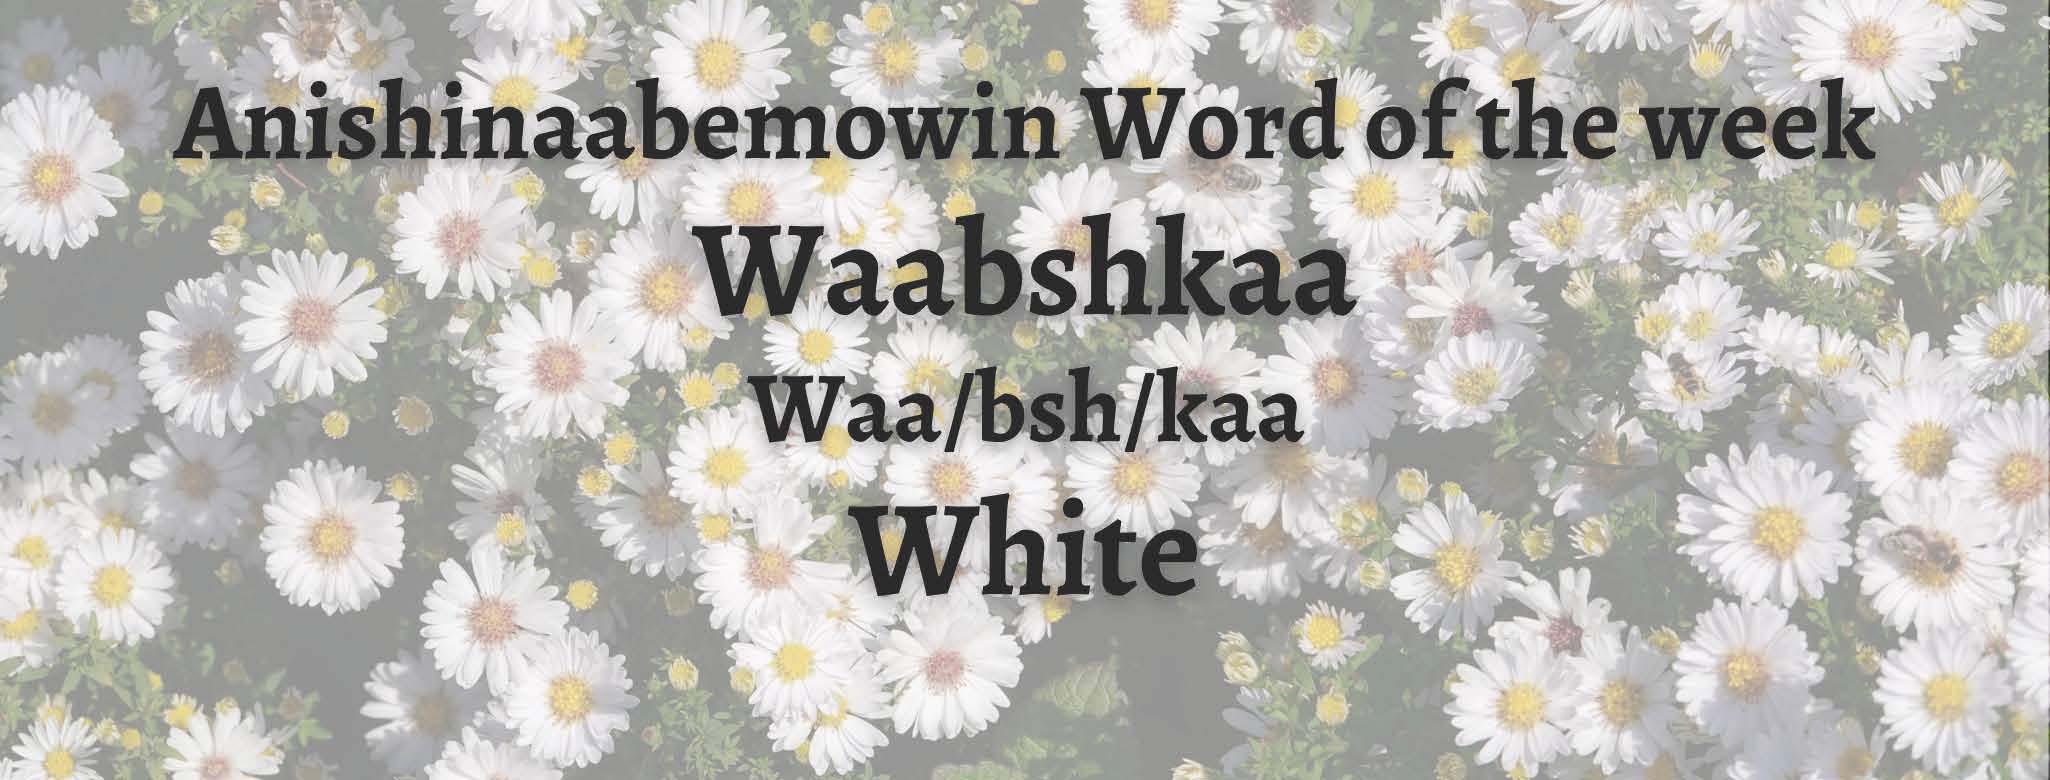 Anishinaabemowin Word of the week Waabshkaa